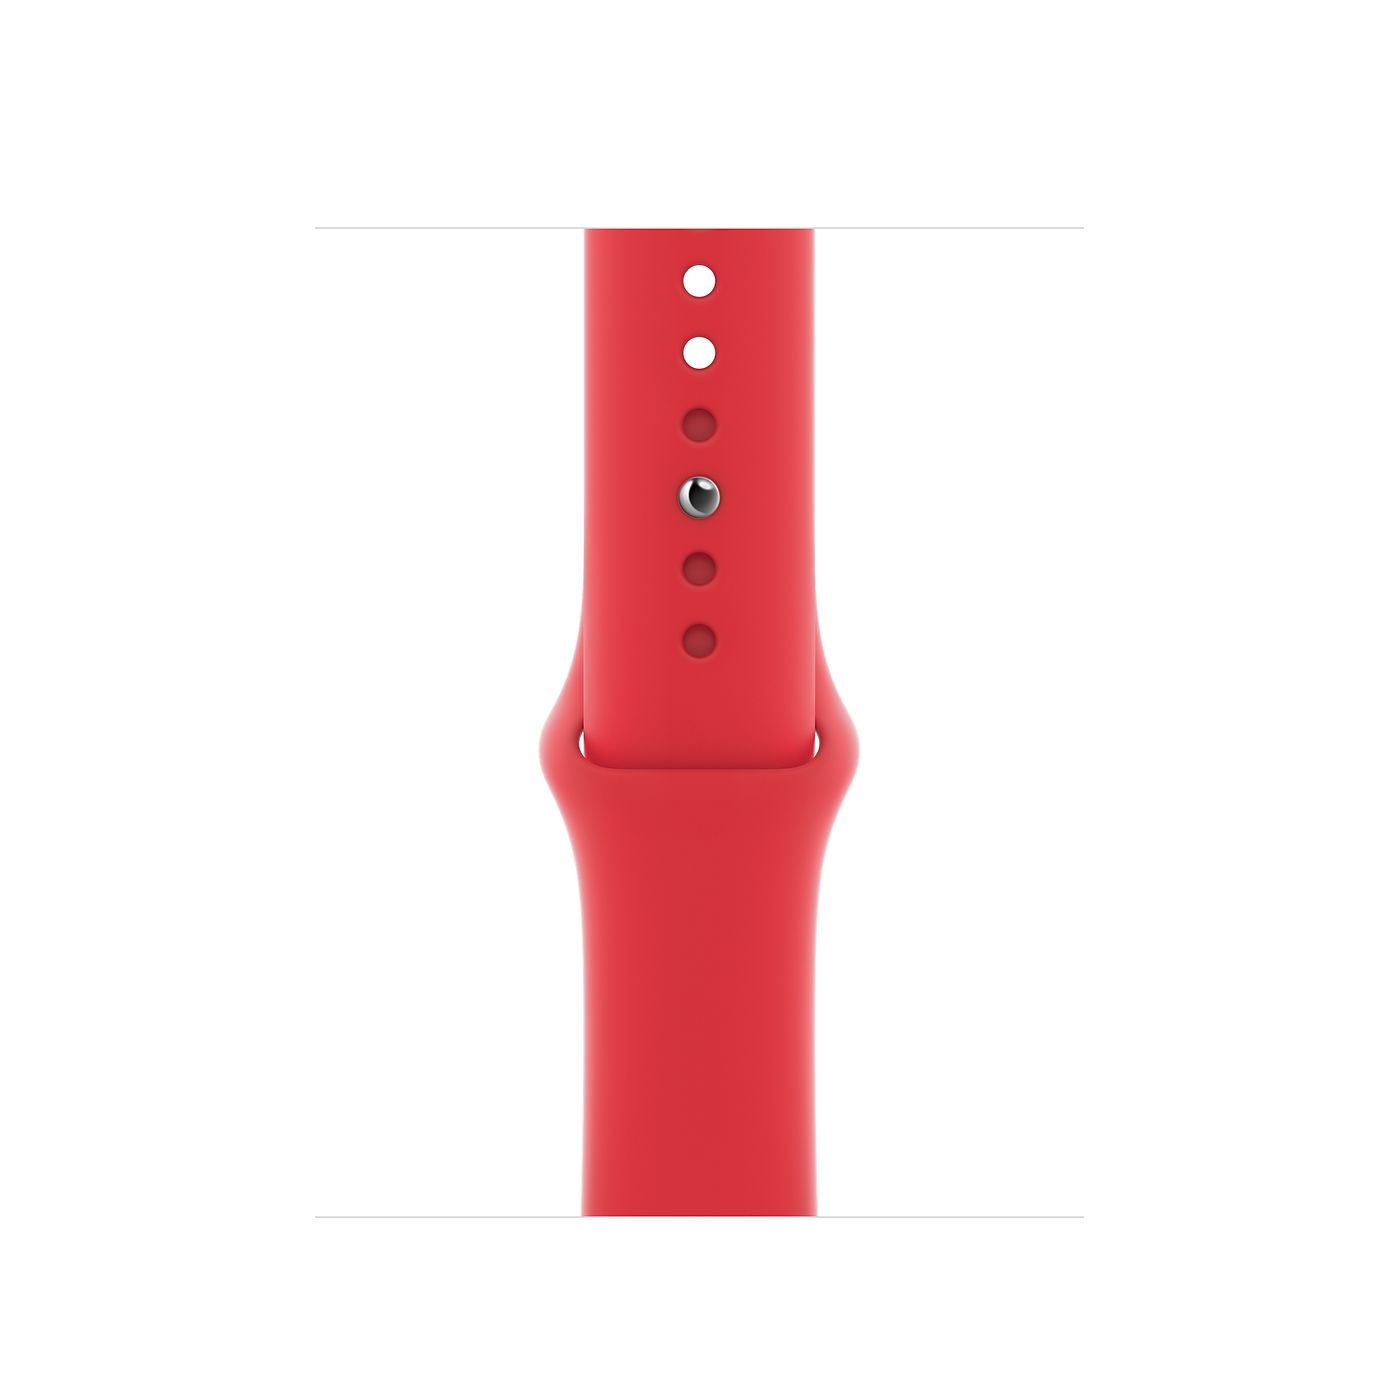 Часы Apple Watch Series 6 44 мм, корпус из алюминия цвета (PRODUCT)RED, спортивный ремешок красного цвета